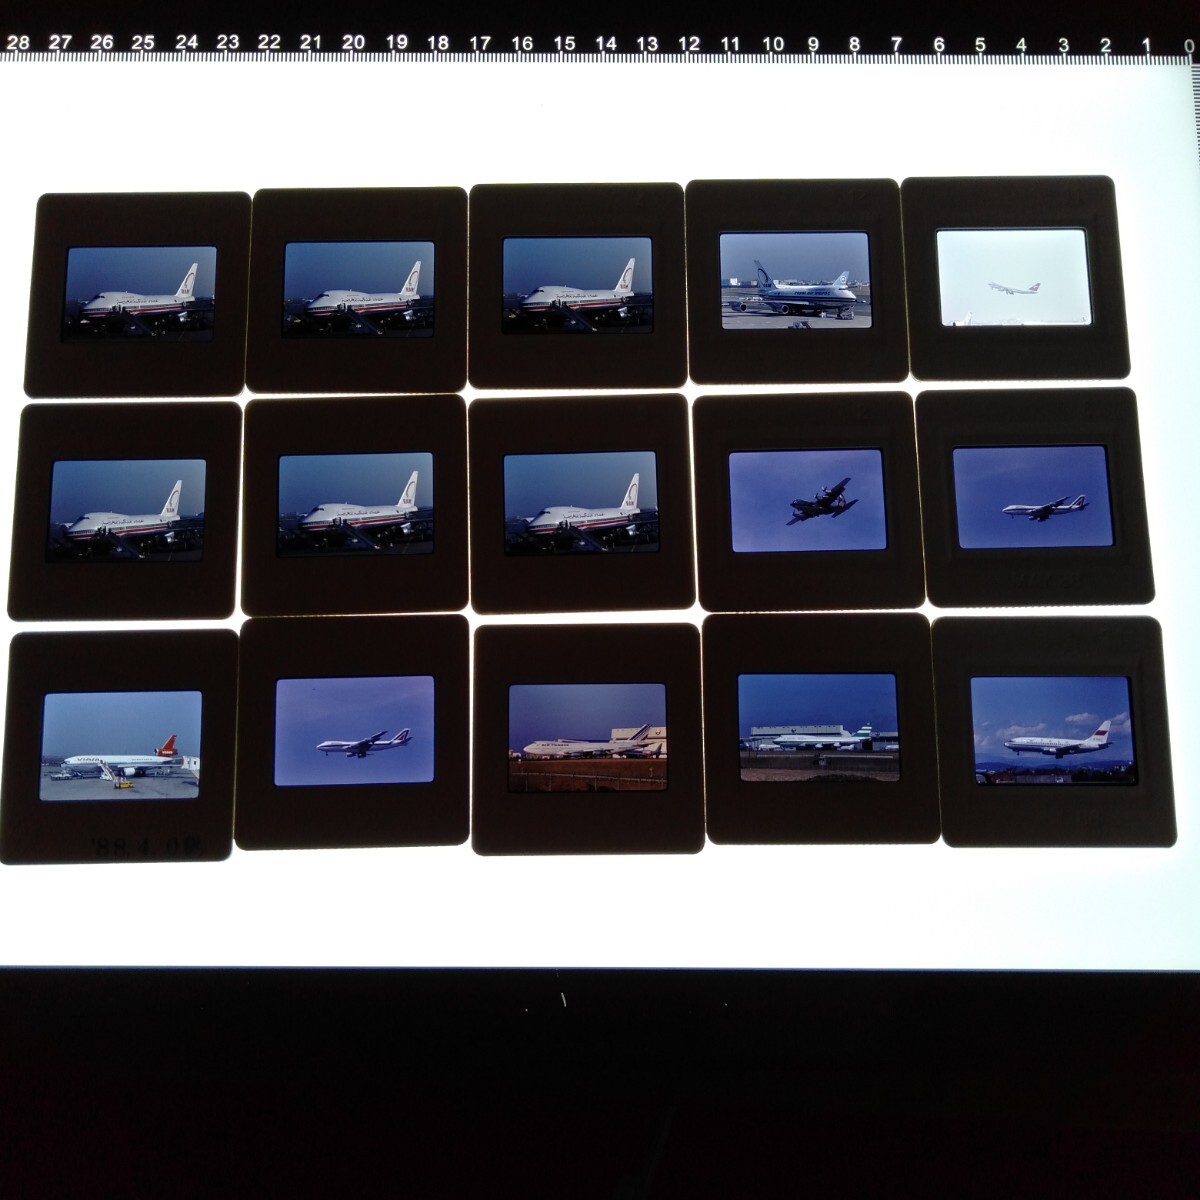 ネ123 航空機 旅客機 輸送機 エールフランス ネガ カメラマニア秘蔵品 蔵出し コレクション 15枚まとめて_画像2